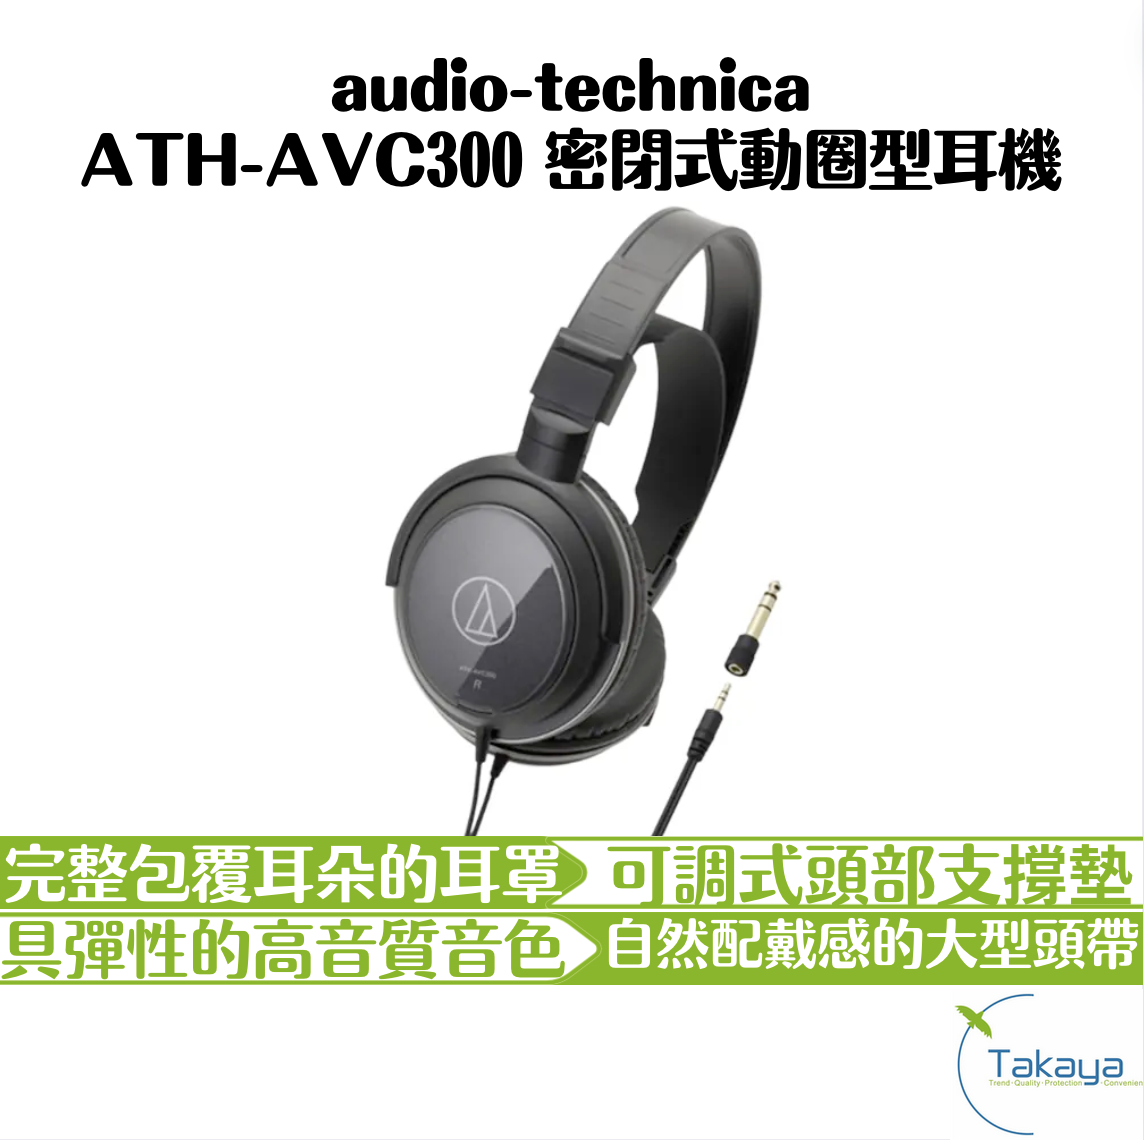 audio-technica ATH-AVC300 密閉式動圈型耳機 有線耳機 耳罩式 AV耳機 低音魄力 舒適配戴